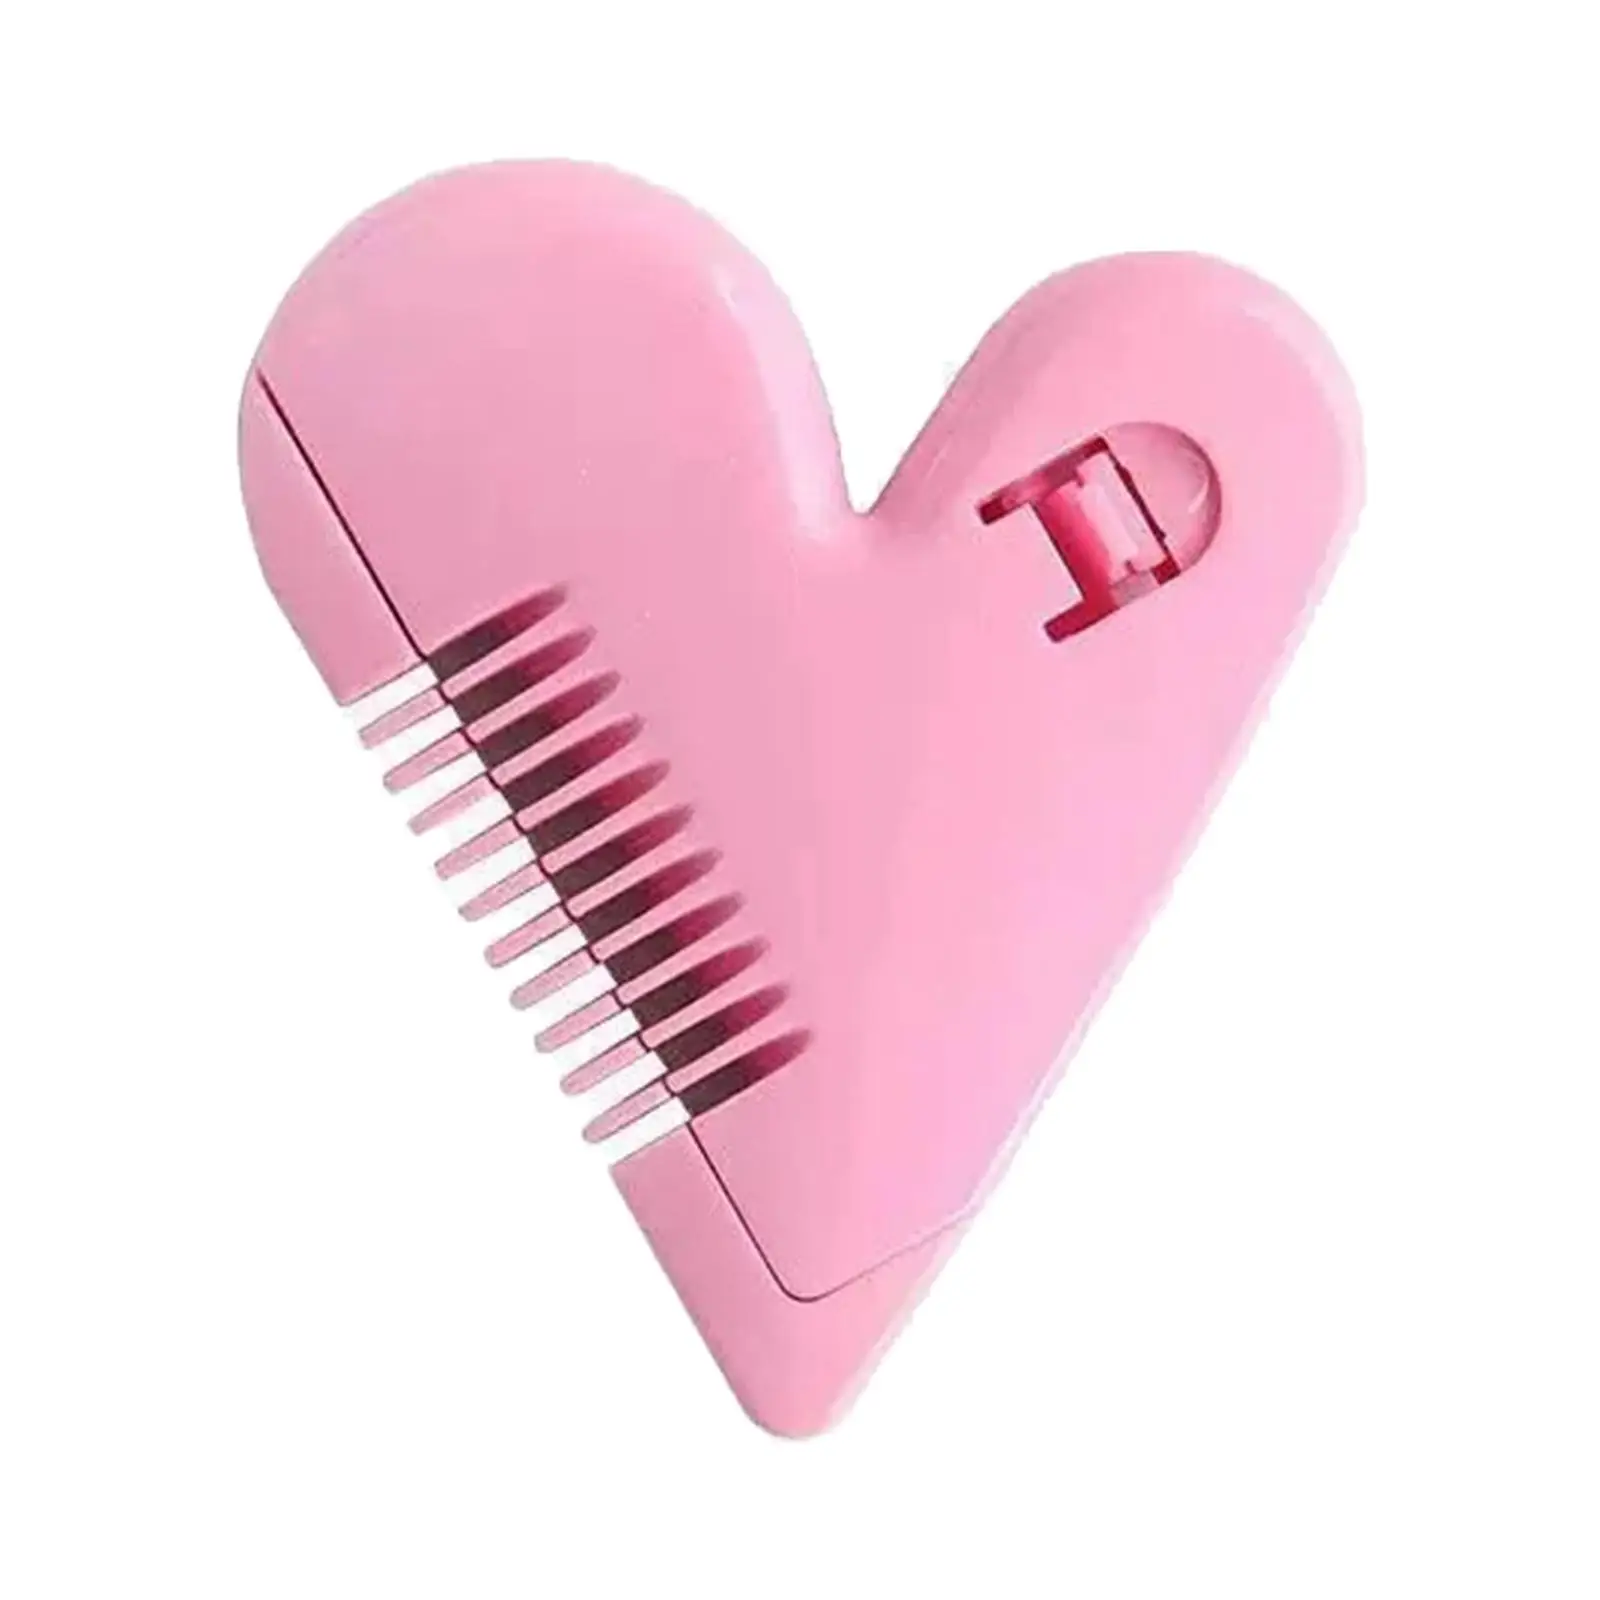 Мини-триммер для волос Двусторонний парикмахерский инструмент Прочная расческа для стрижки волос Триммер для стрижки волос для девочек с тонкими и густыми волосами